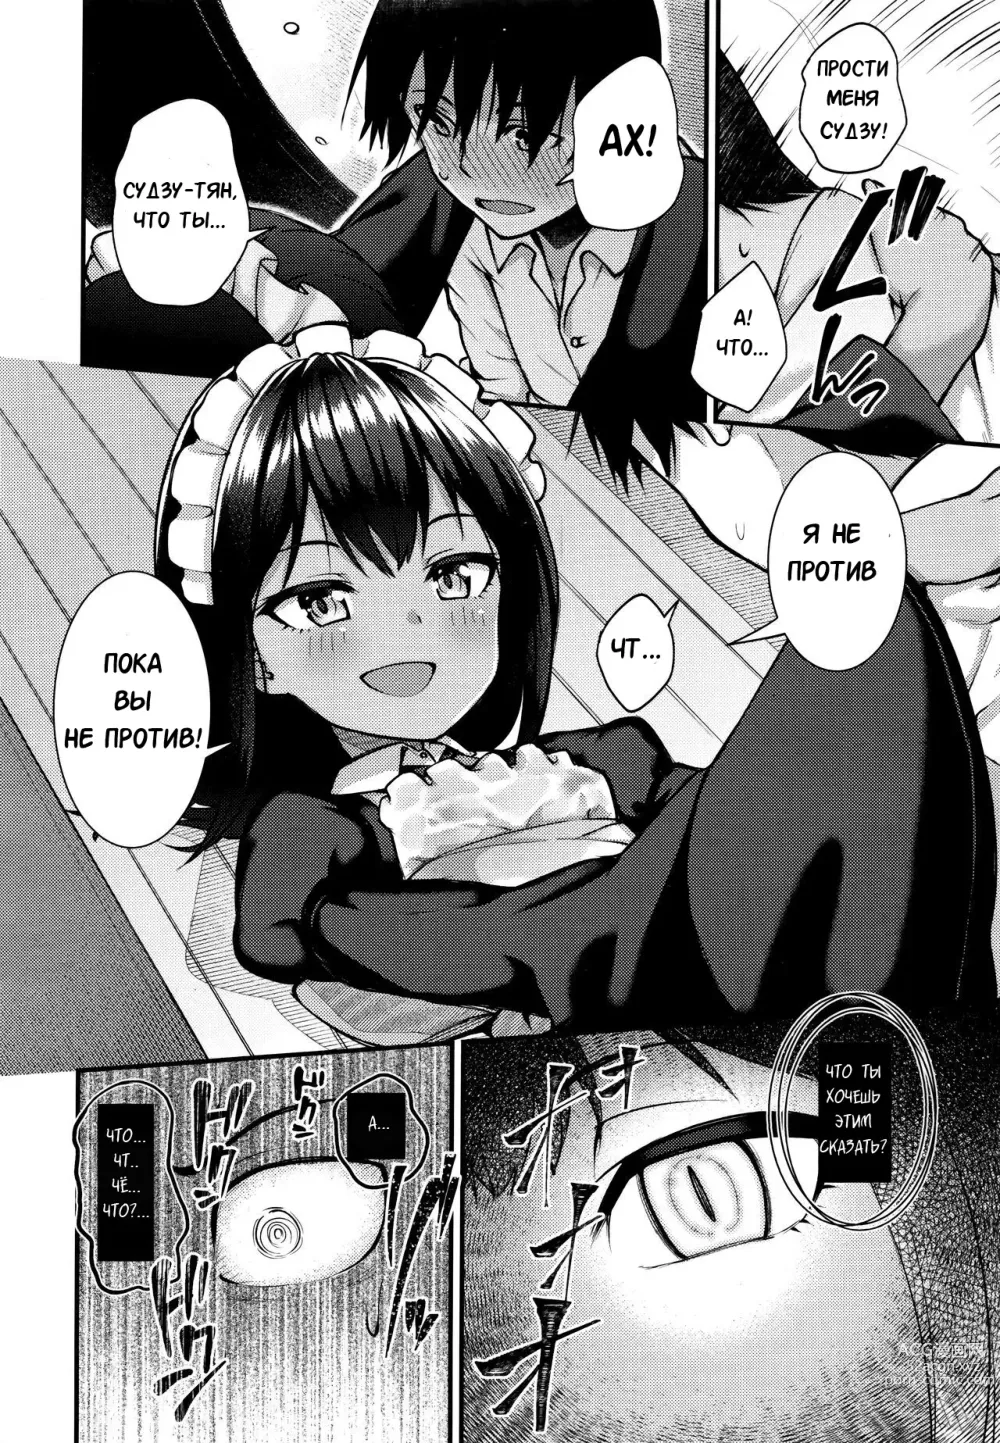 Page 8 of manga Возмездие кошки